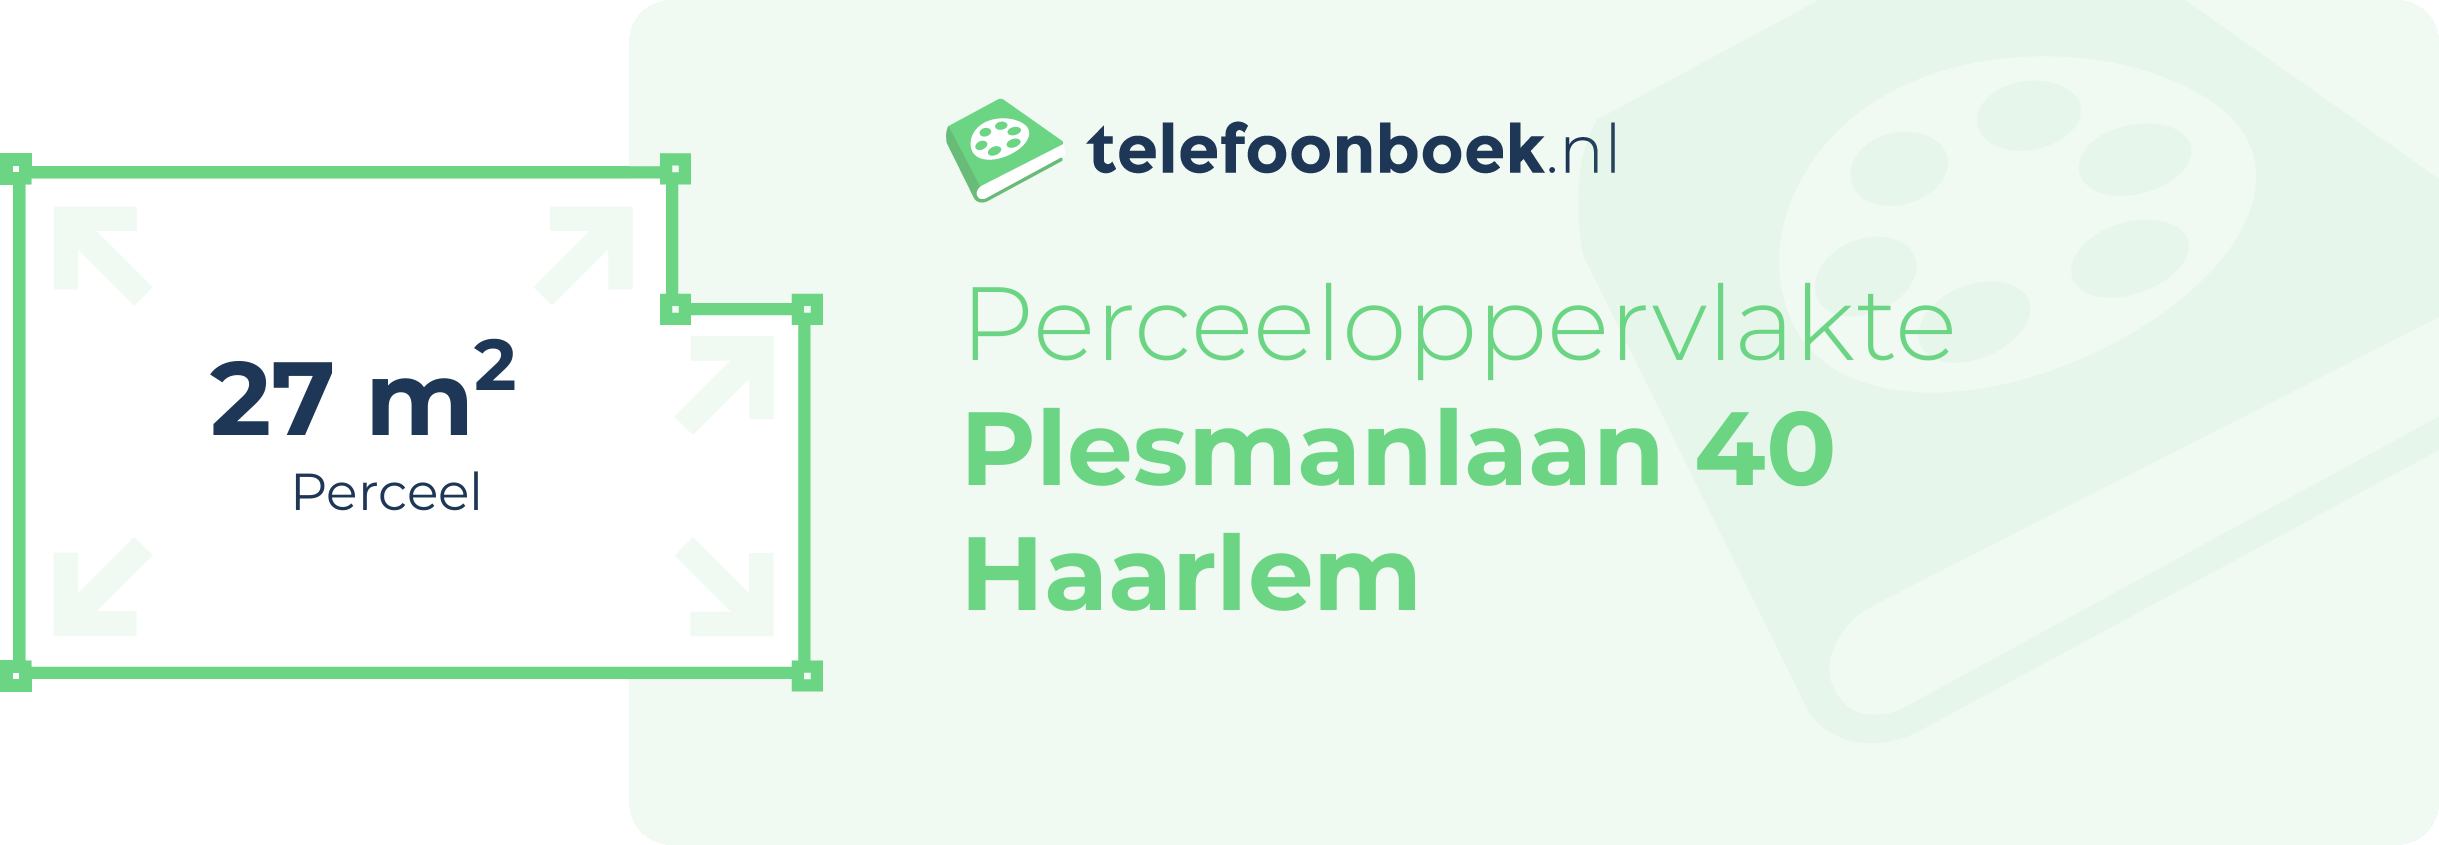 Perceeloppervlakte Plesmanlaan 40 Haarlem